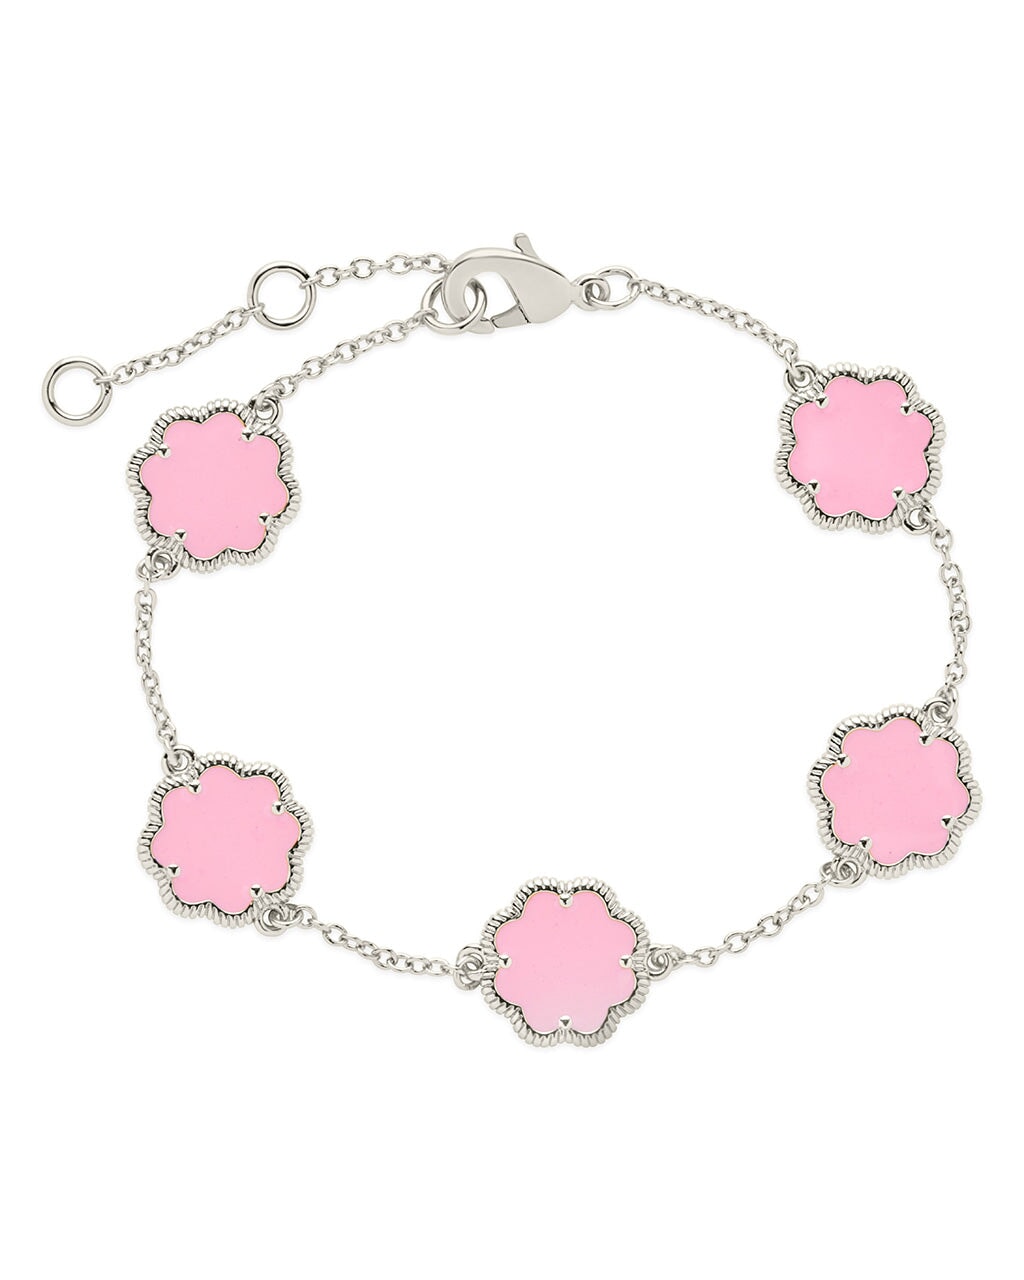 Rose Petal Station Bracelet Bracelet Sterling Forever Silver Pink Enamel 